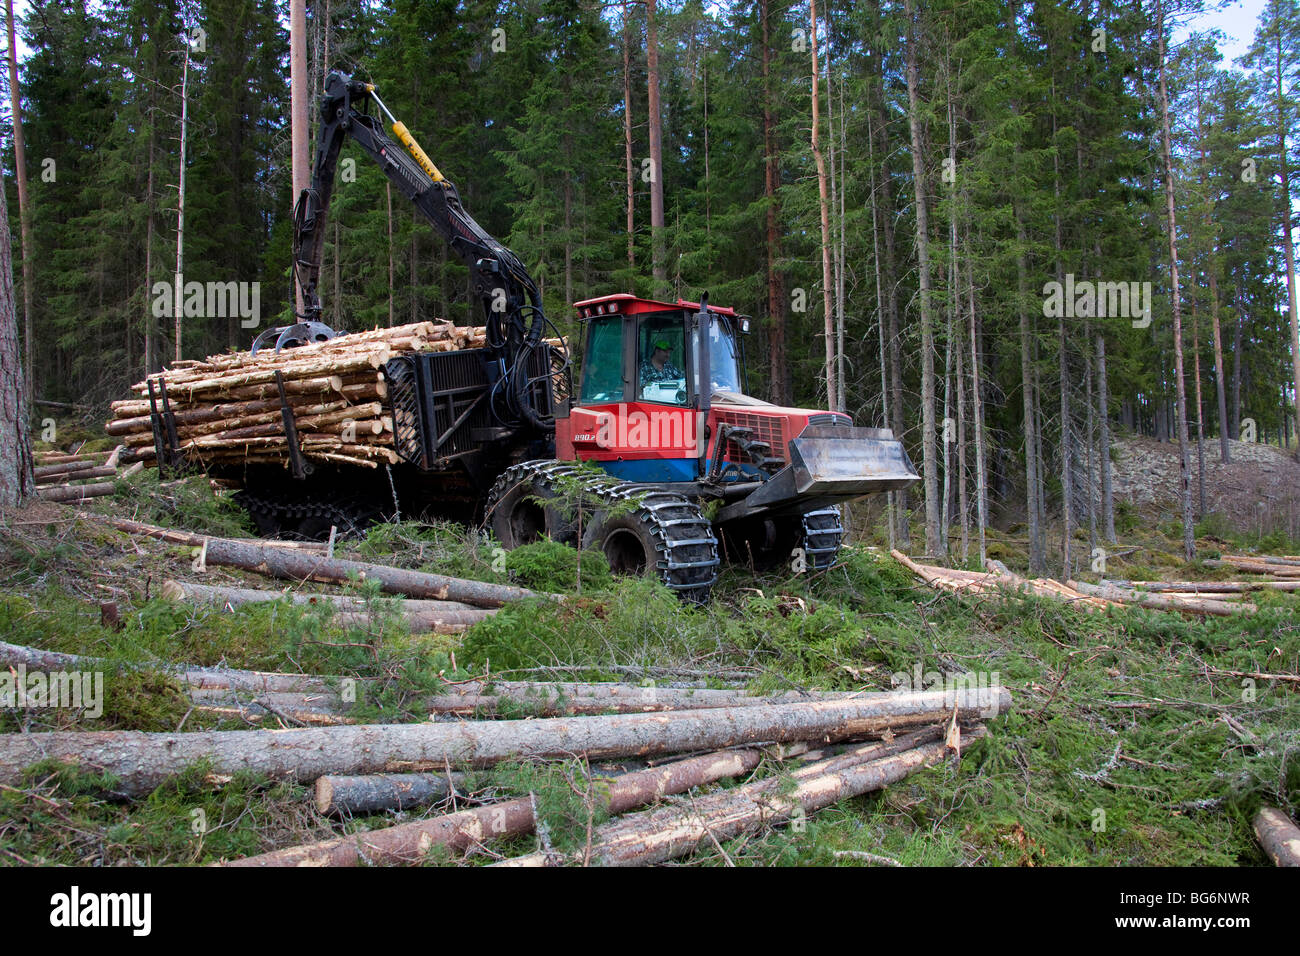 Holzverarbeitende Industrie zeigt Holz / Bäume auf Forstmaschinen geladen / Timberjack Harvester im Pinienwald Stockfoto